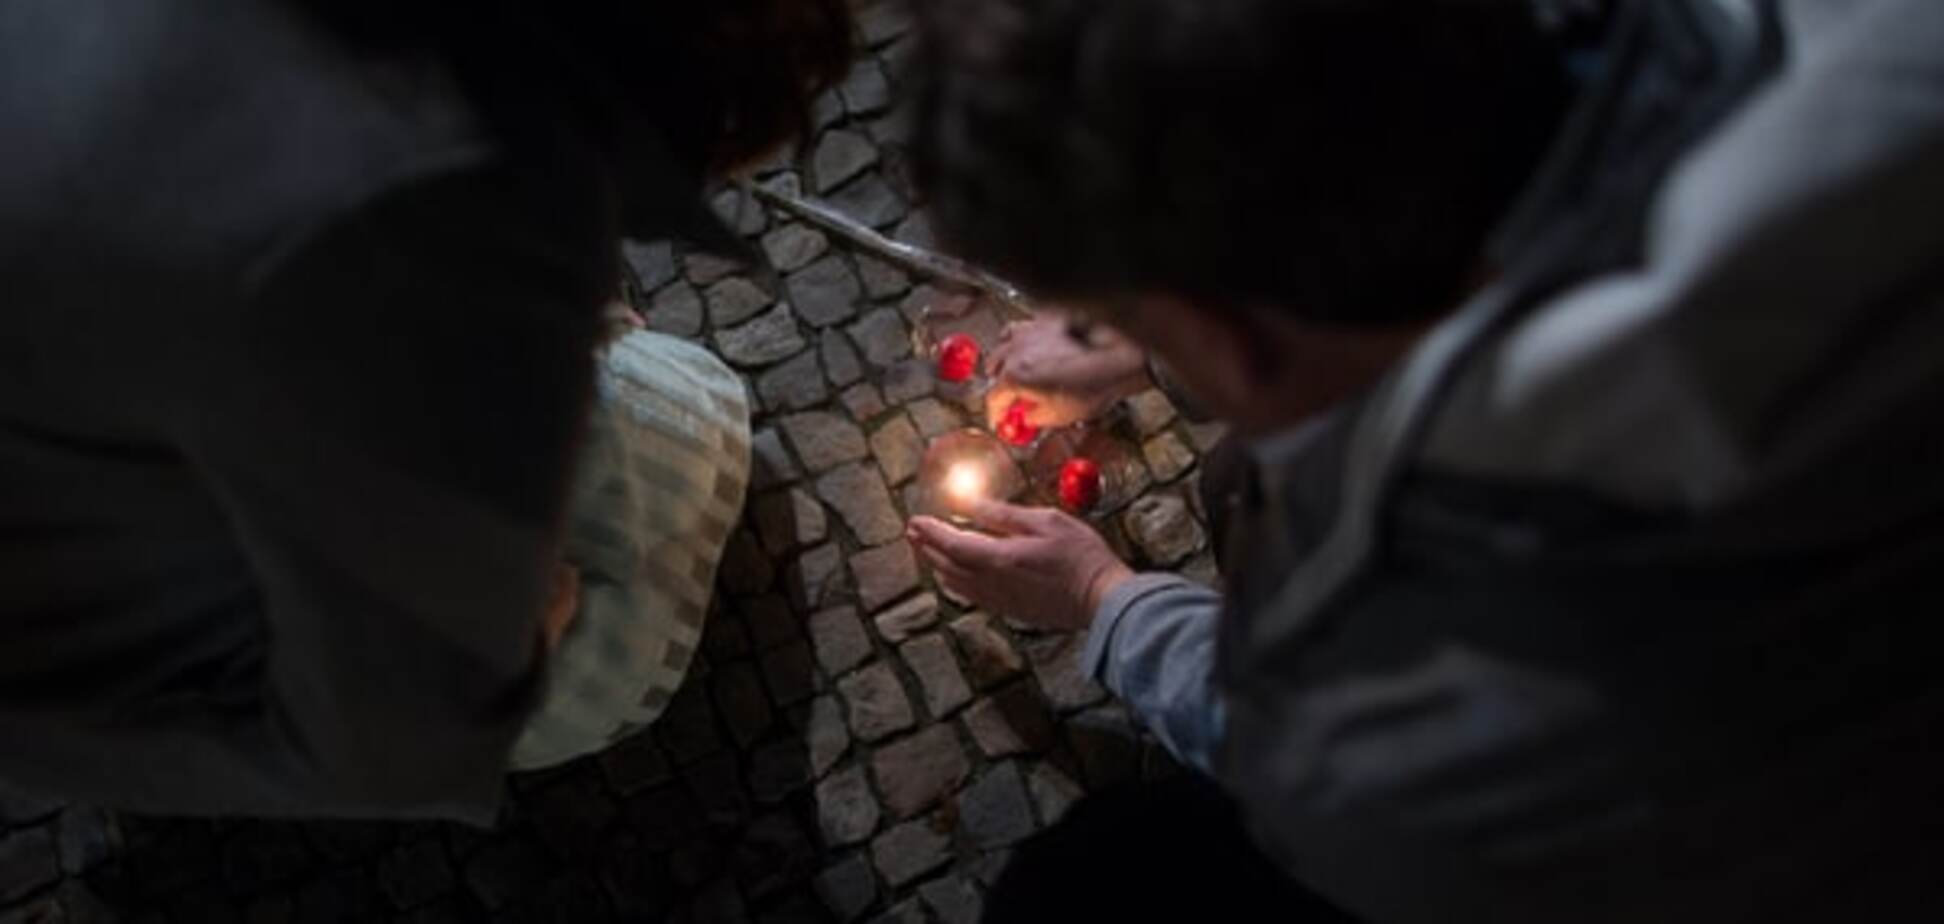 Під час терактів у Парижі українці не постраждали - МЗС